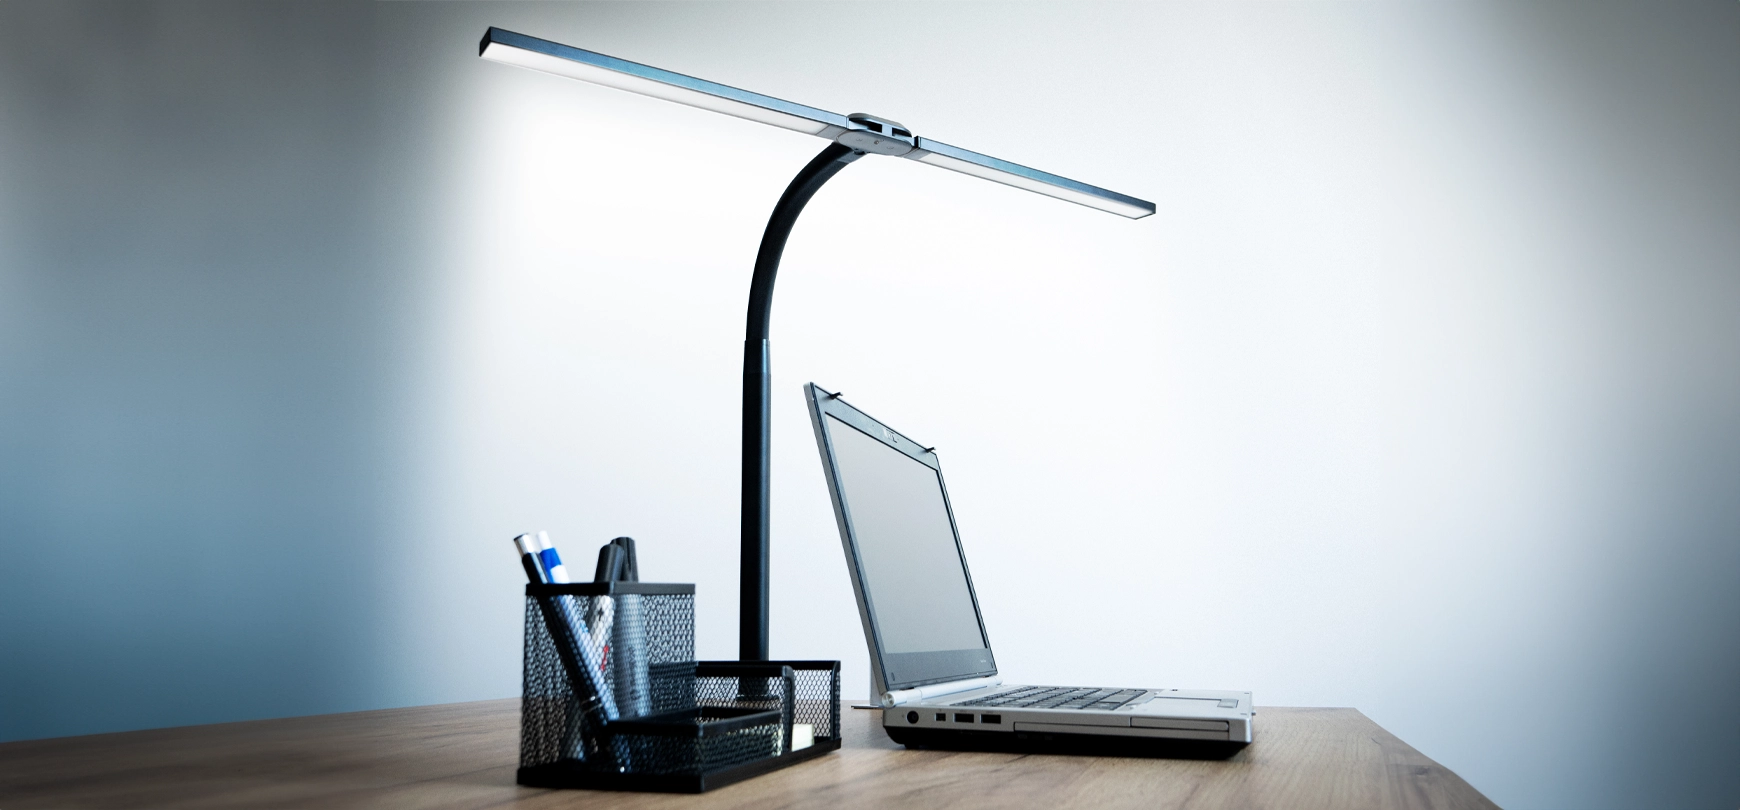 Modern, adjustable desk lamp